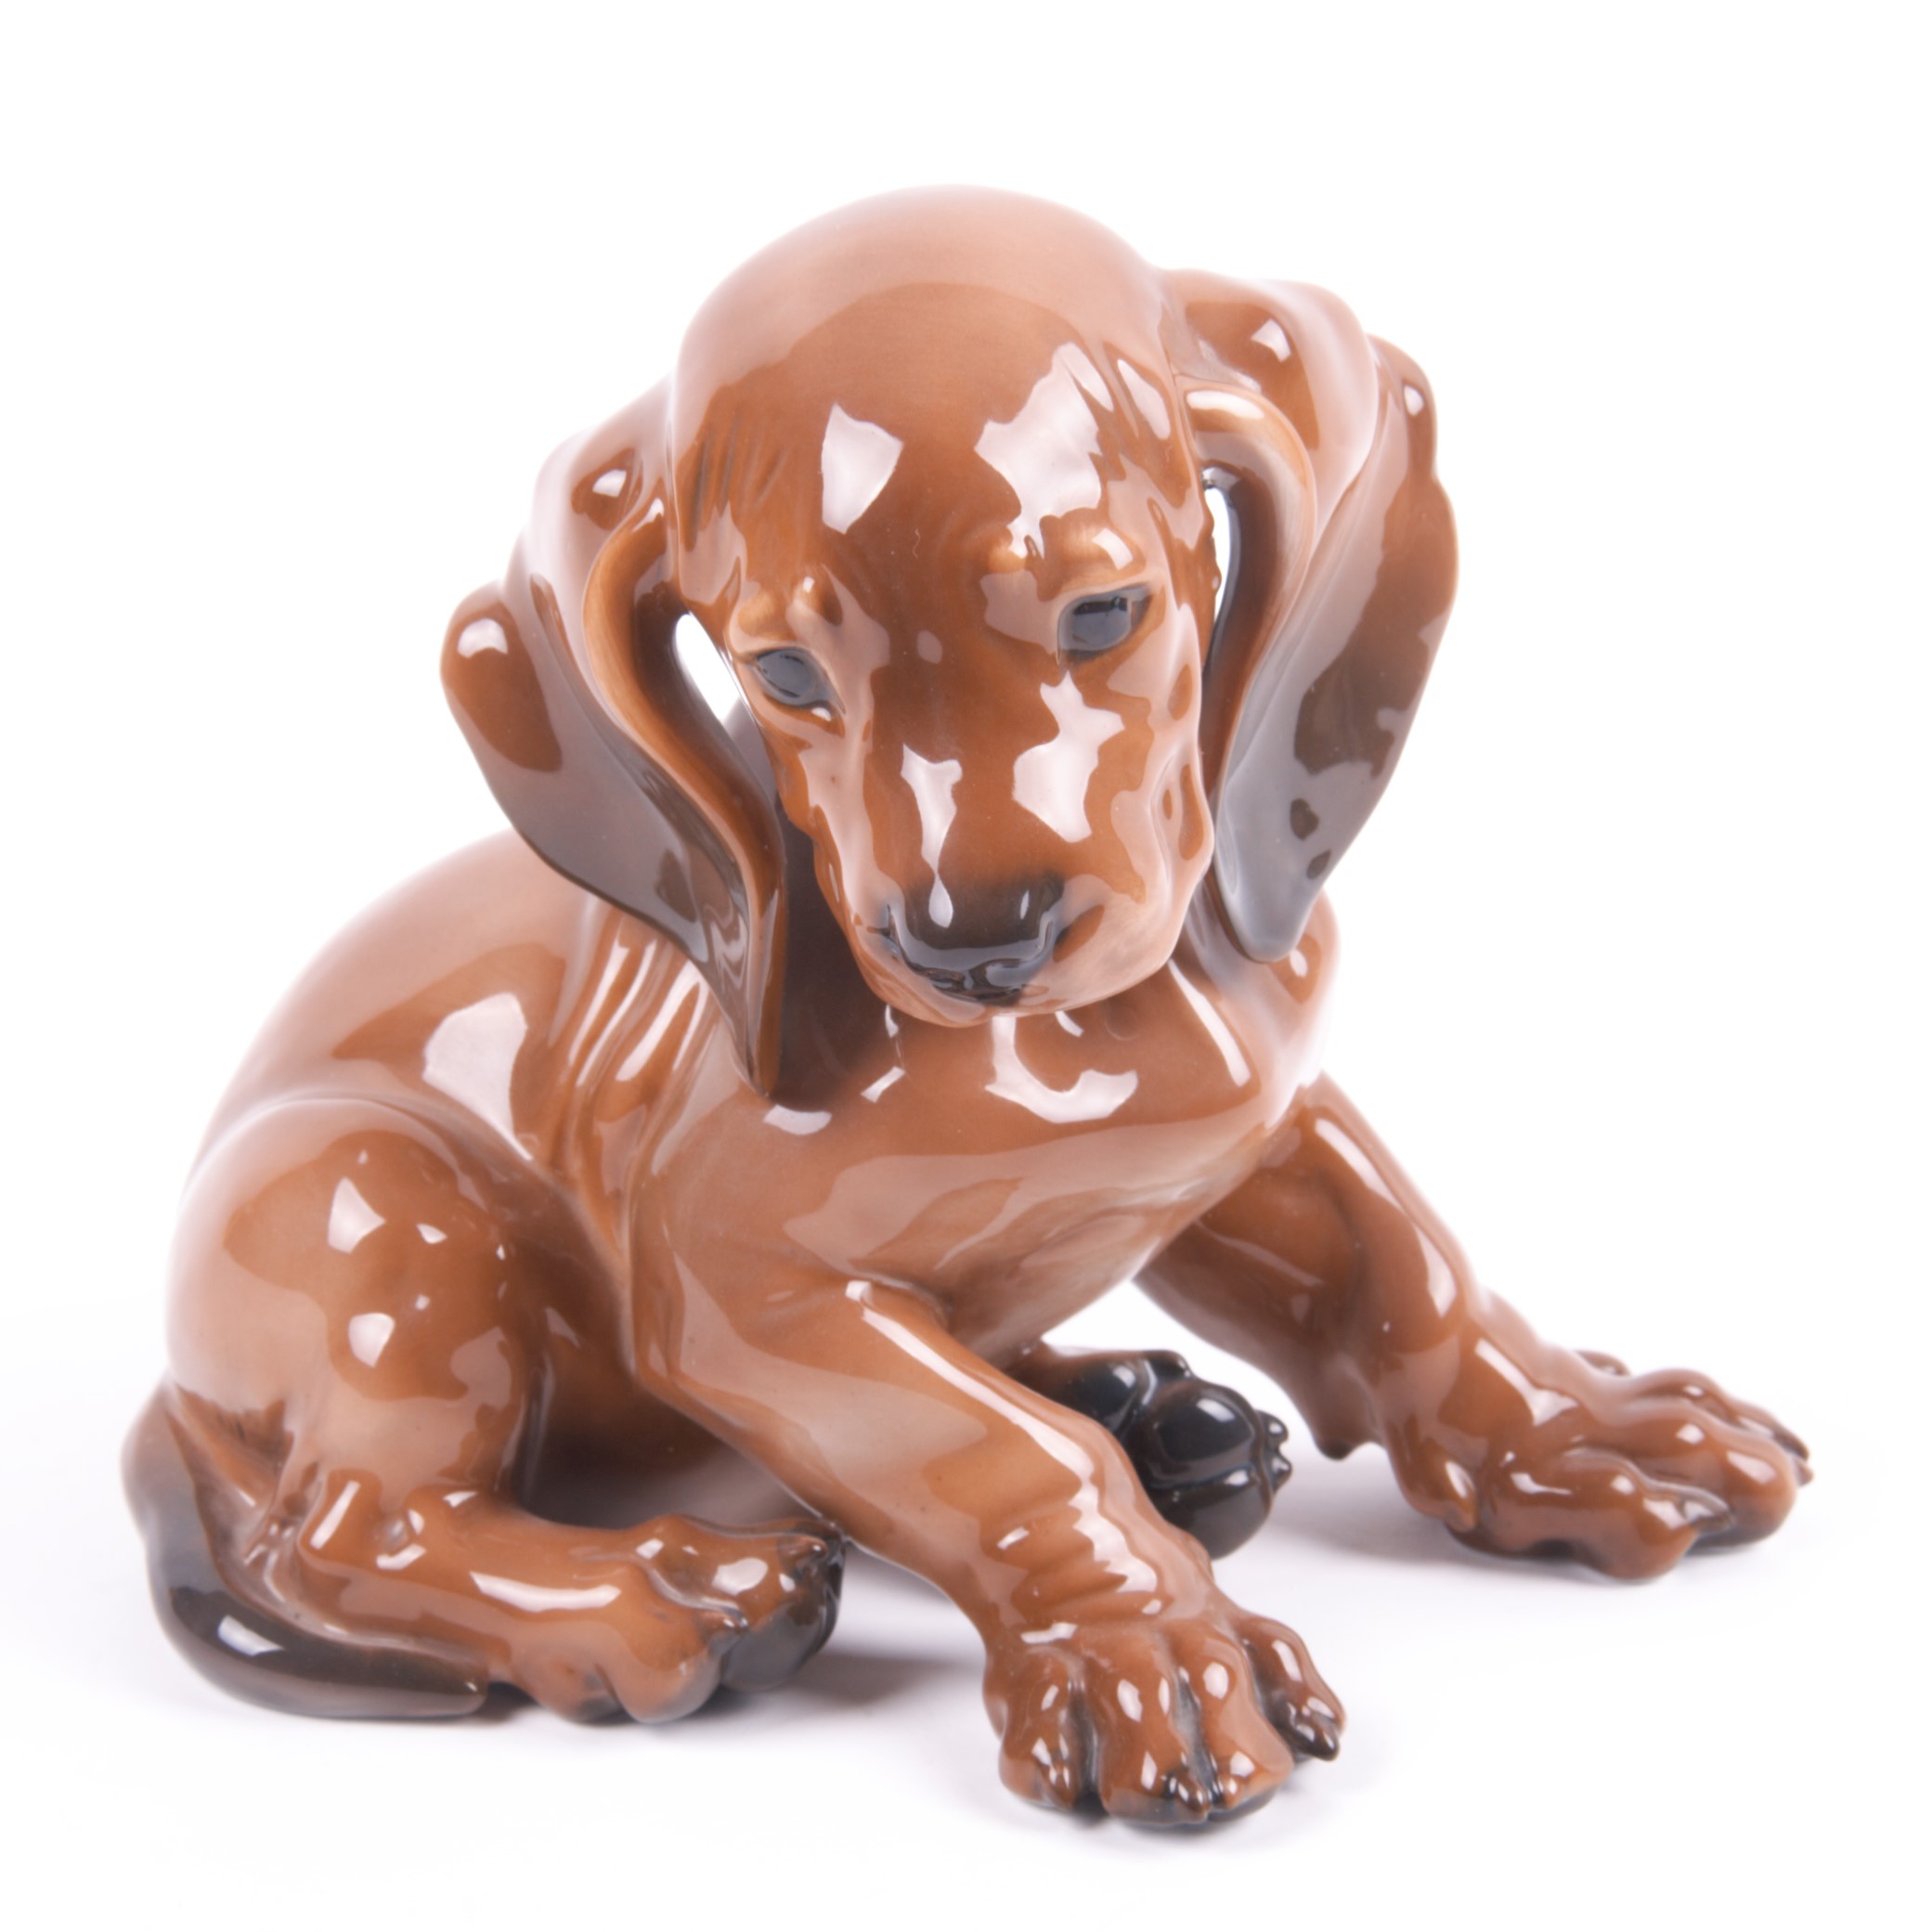 Rosenthal Porcelain Dog Figure